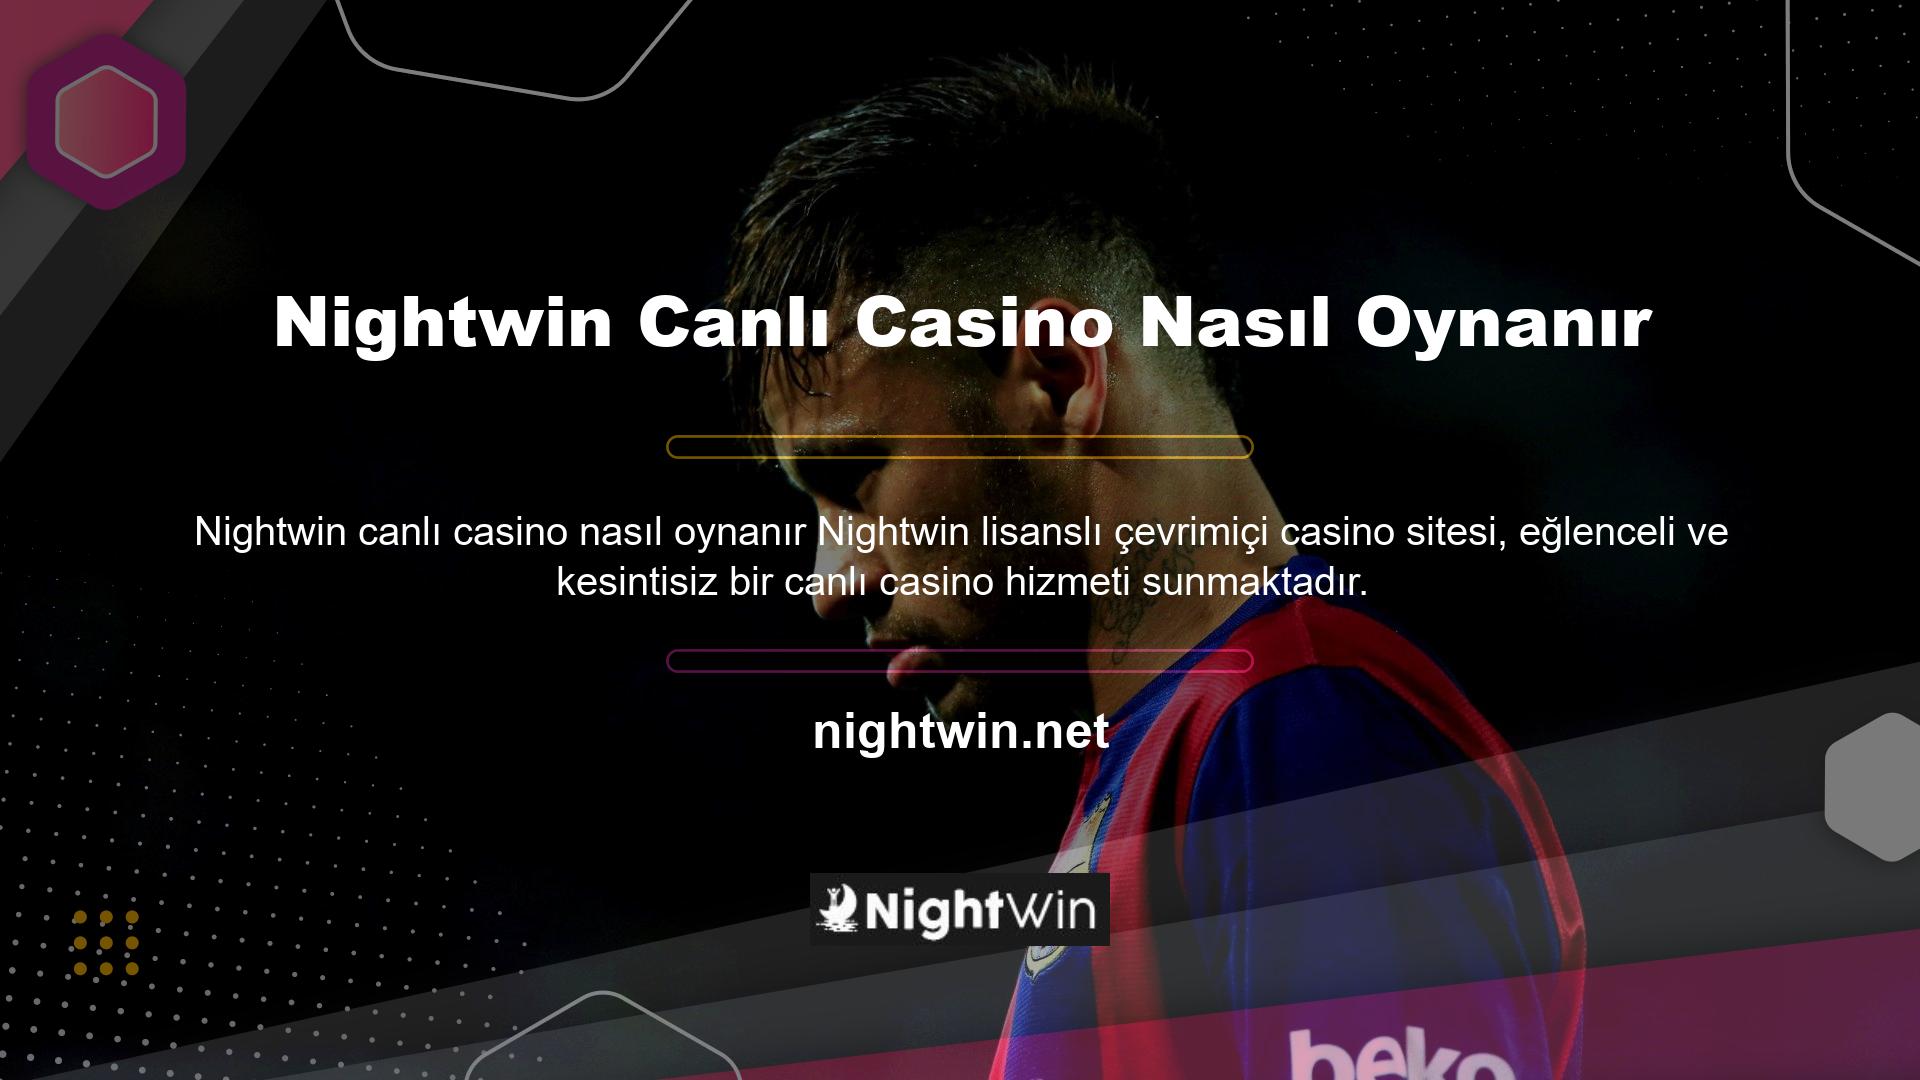 Nightwin Canlı Casino'da oynamaya ilişkin sorular, bu hizmeti kullanmak isteyen kullanıcılar tarafından sıklıkla sorulmaktadır